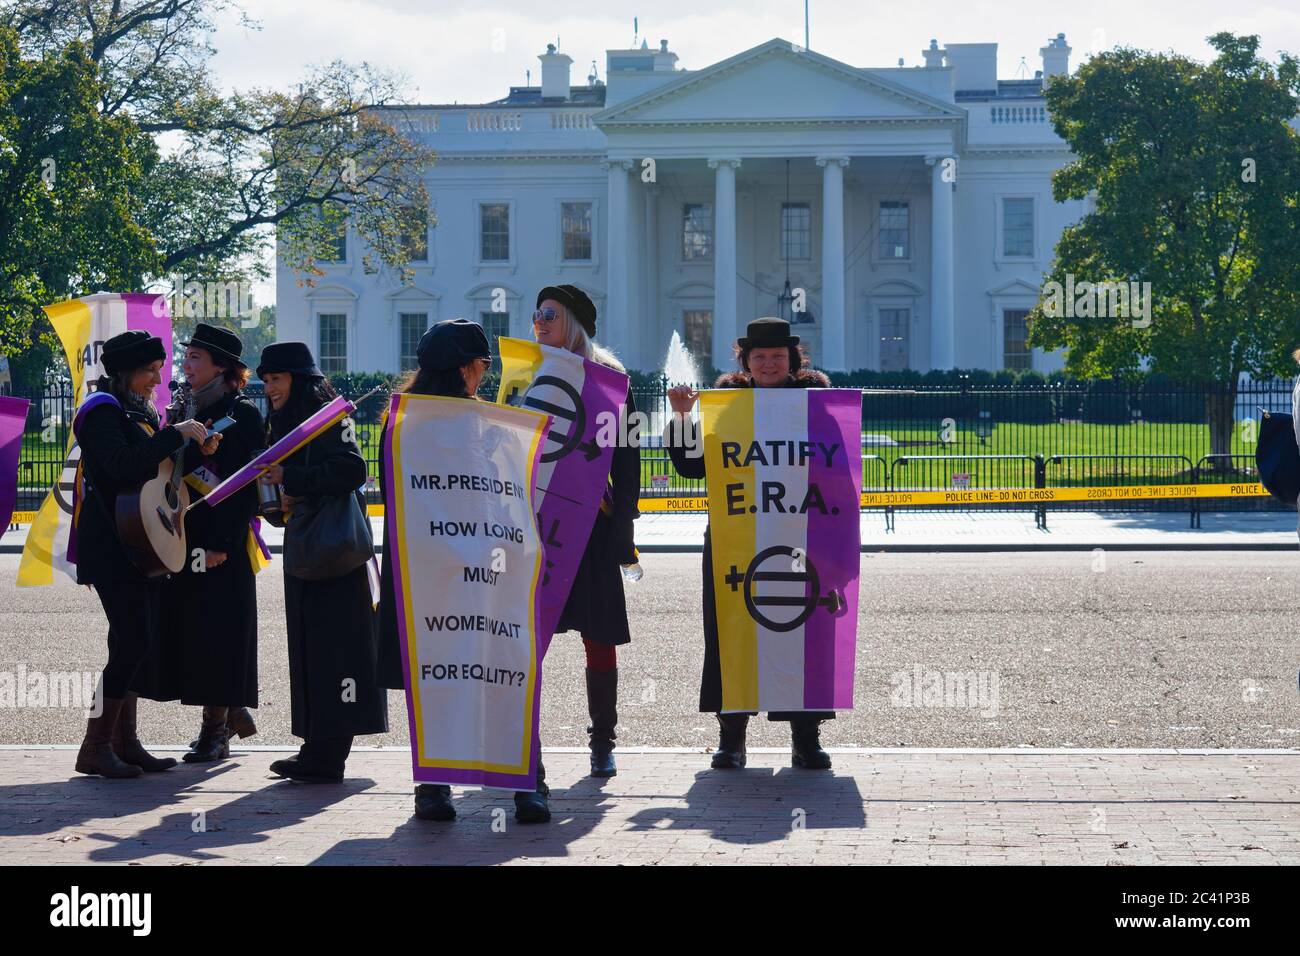 Attivisti che chiedono la ratifica dell'emendamento per la parità di diritti (era) di fronte alla Casa Bianca, Washington, D.C. Foto Stock